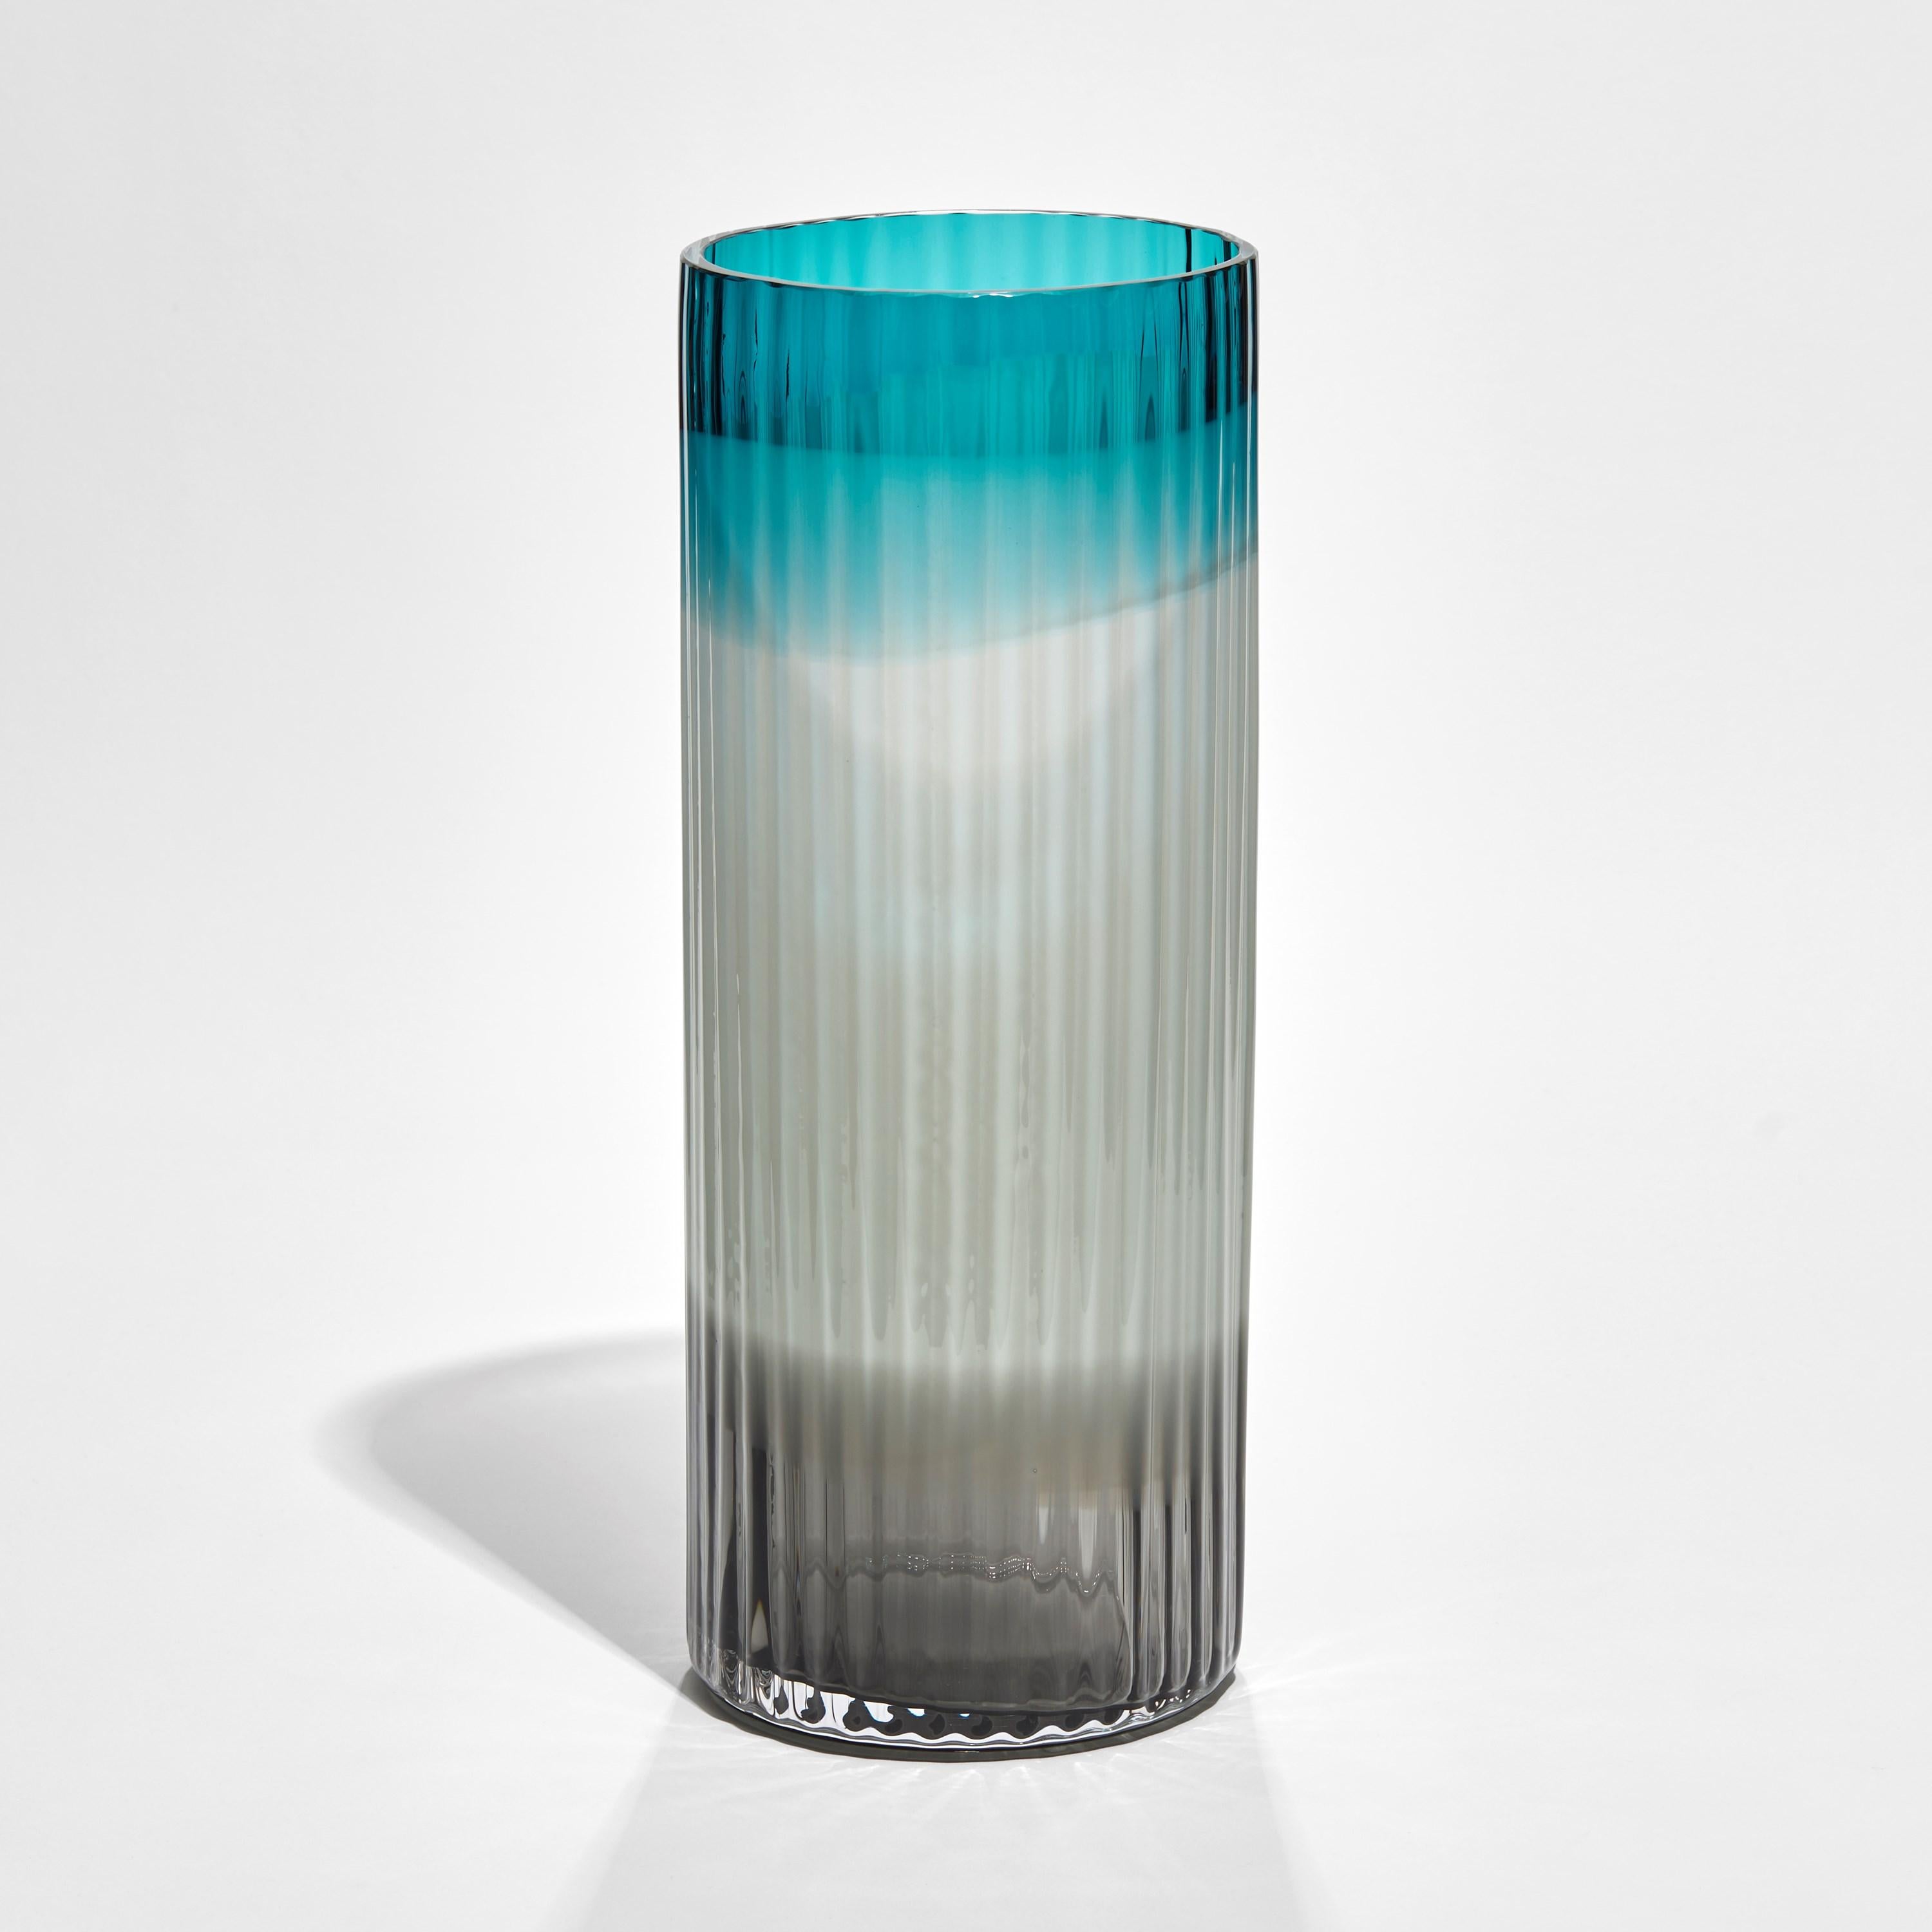 Die Vase 'Plissé in Türkis, Hellblau und Schwarz' ist eine limitierte Auflage der schwedischen Künstlerin und Designerin Lena Bergström.

Die Ausstellung wurde für 